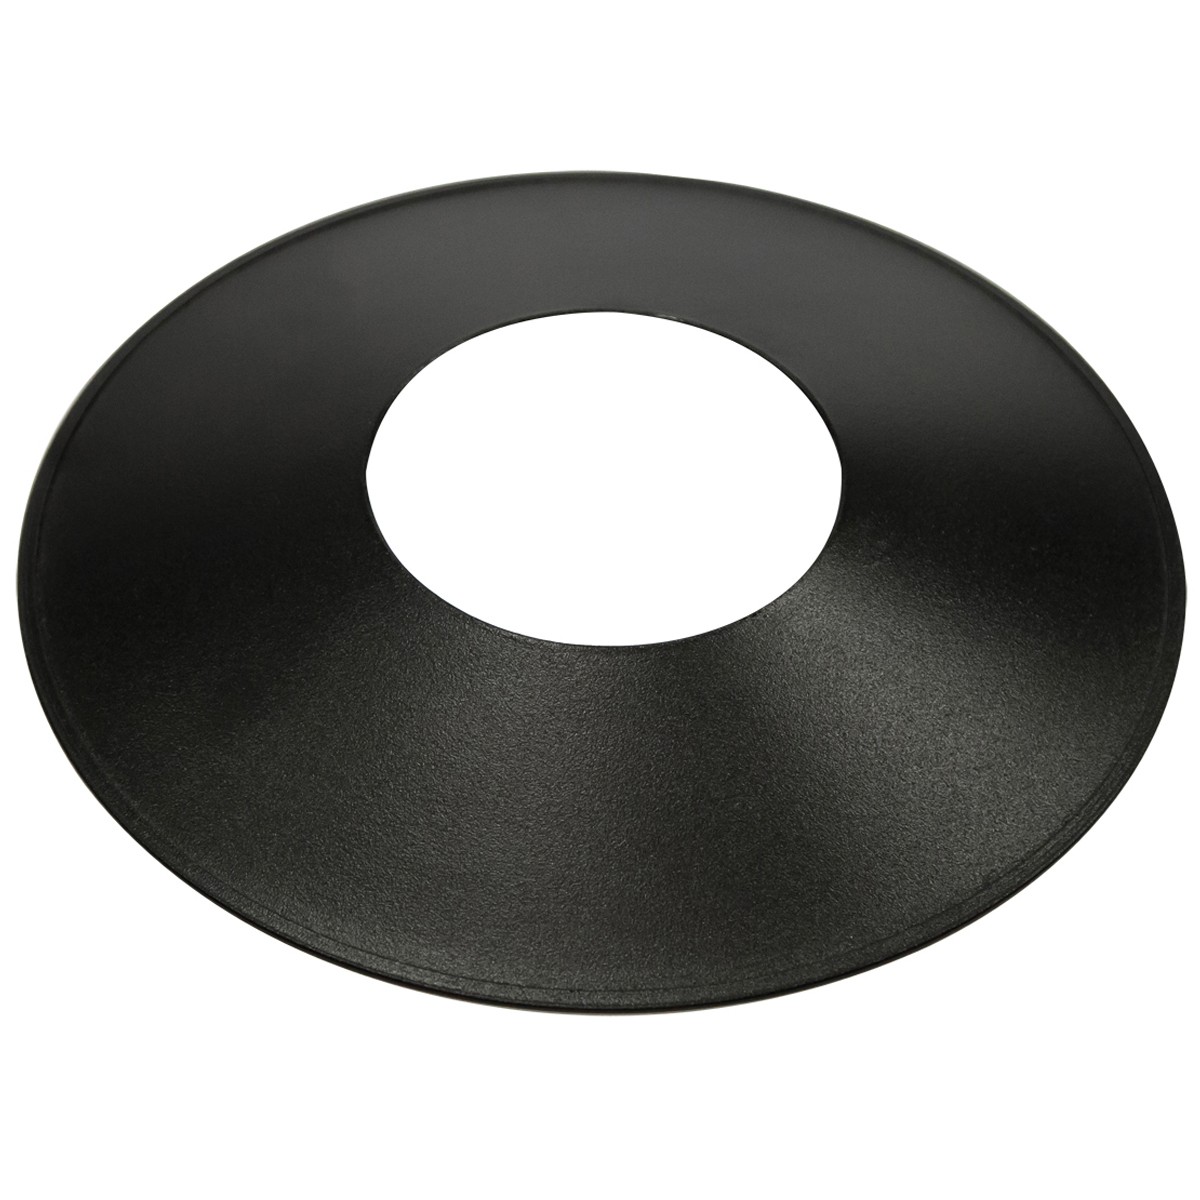 Σκιάδα Φ25cm Μαύρο Χρώμα Με Οπή Φ9.5cm         VK/03041/95/B